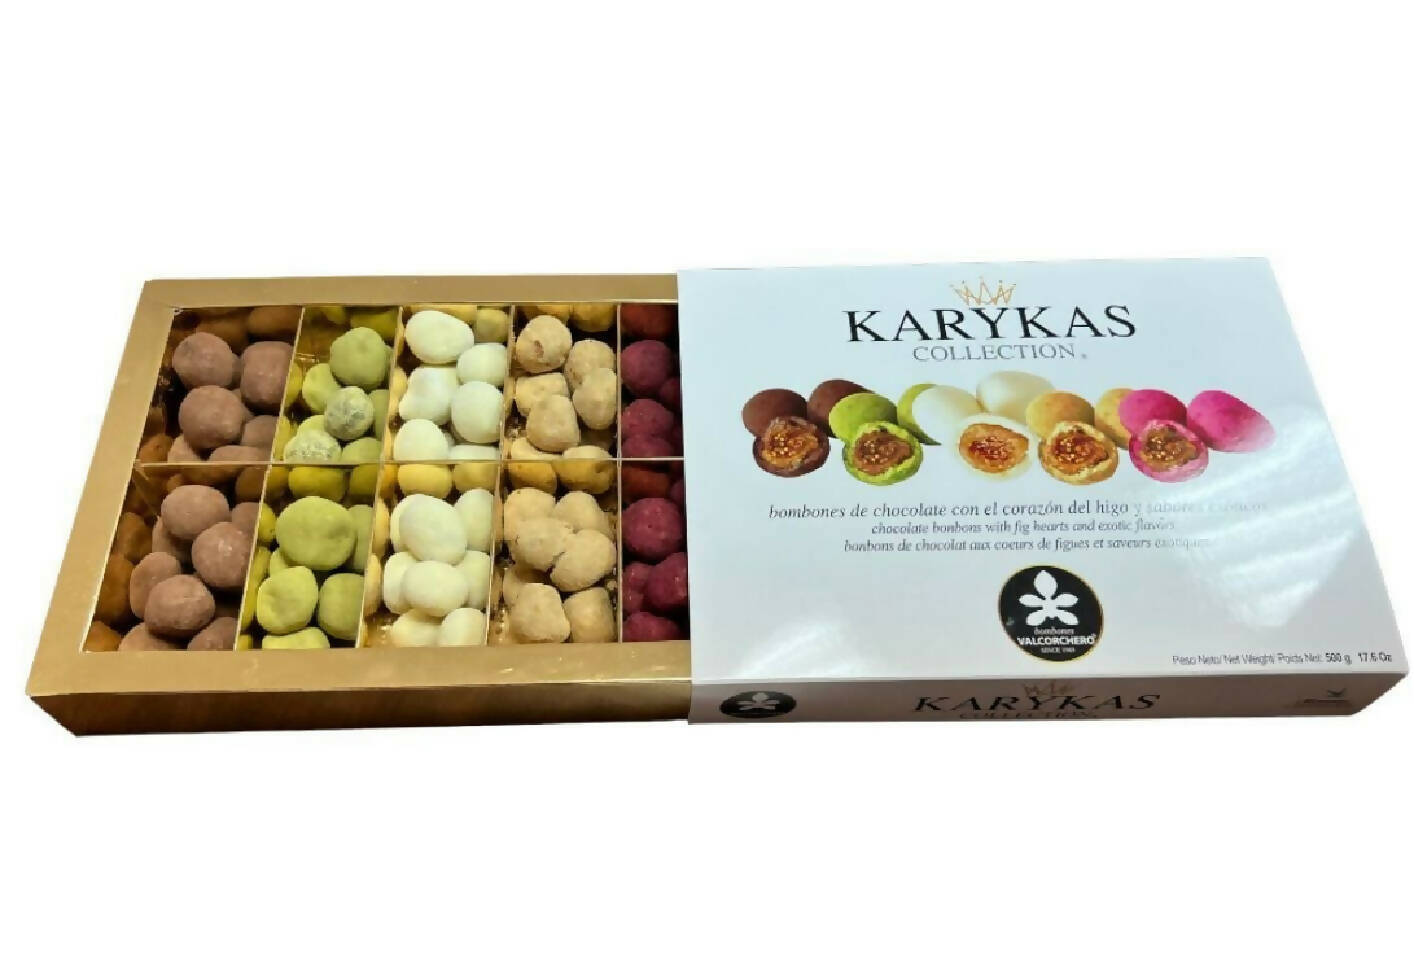 KARYKAS COLLECTION -sampler box